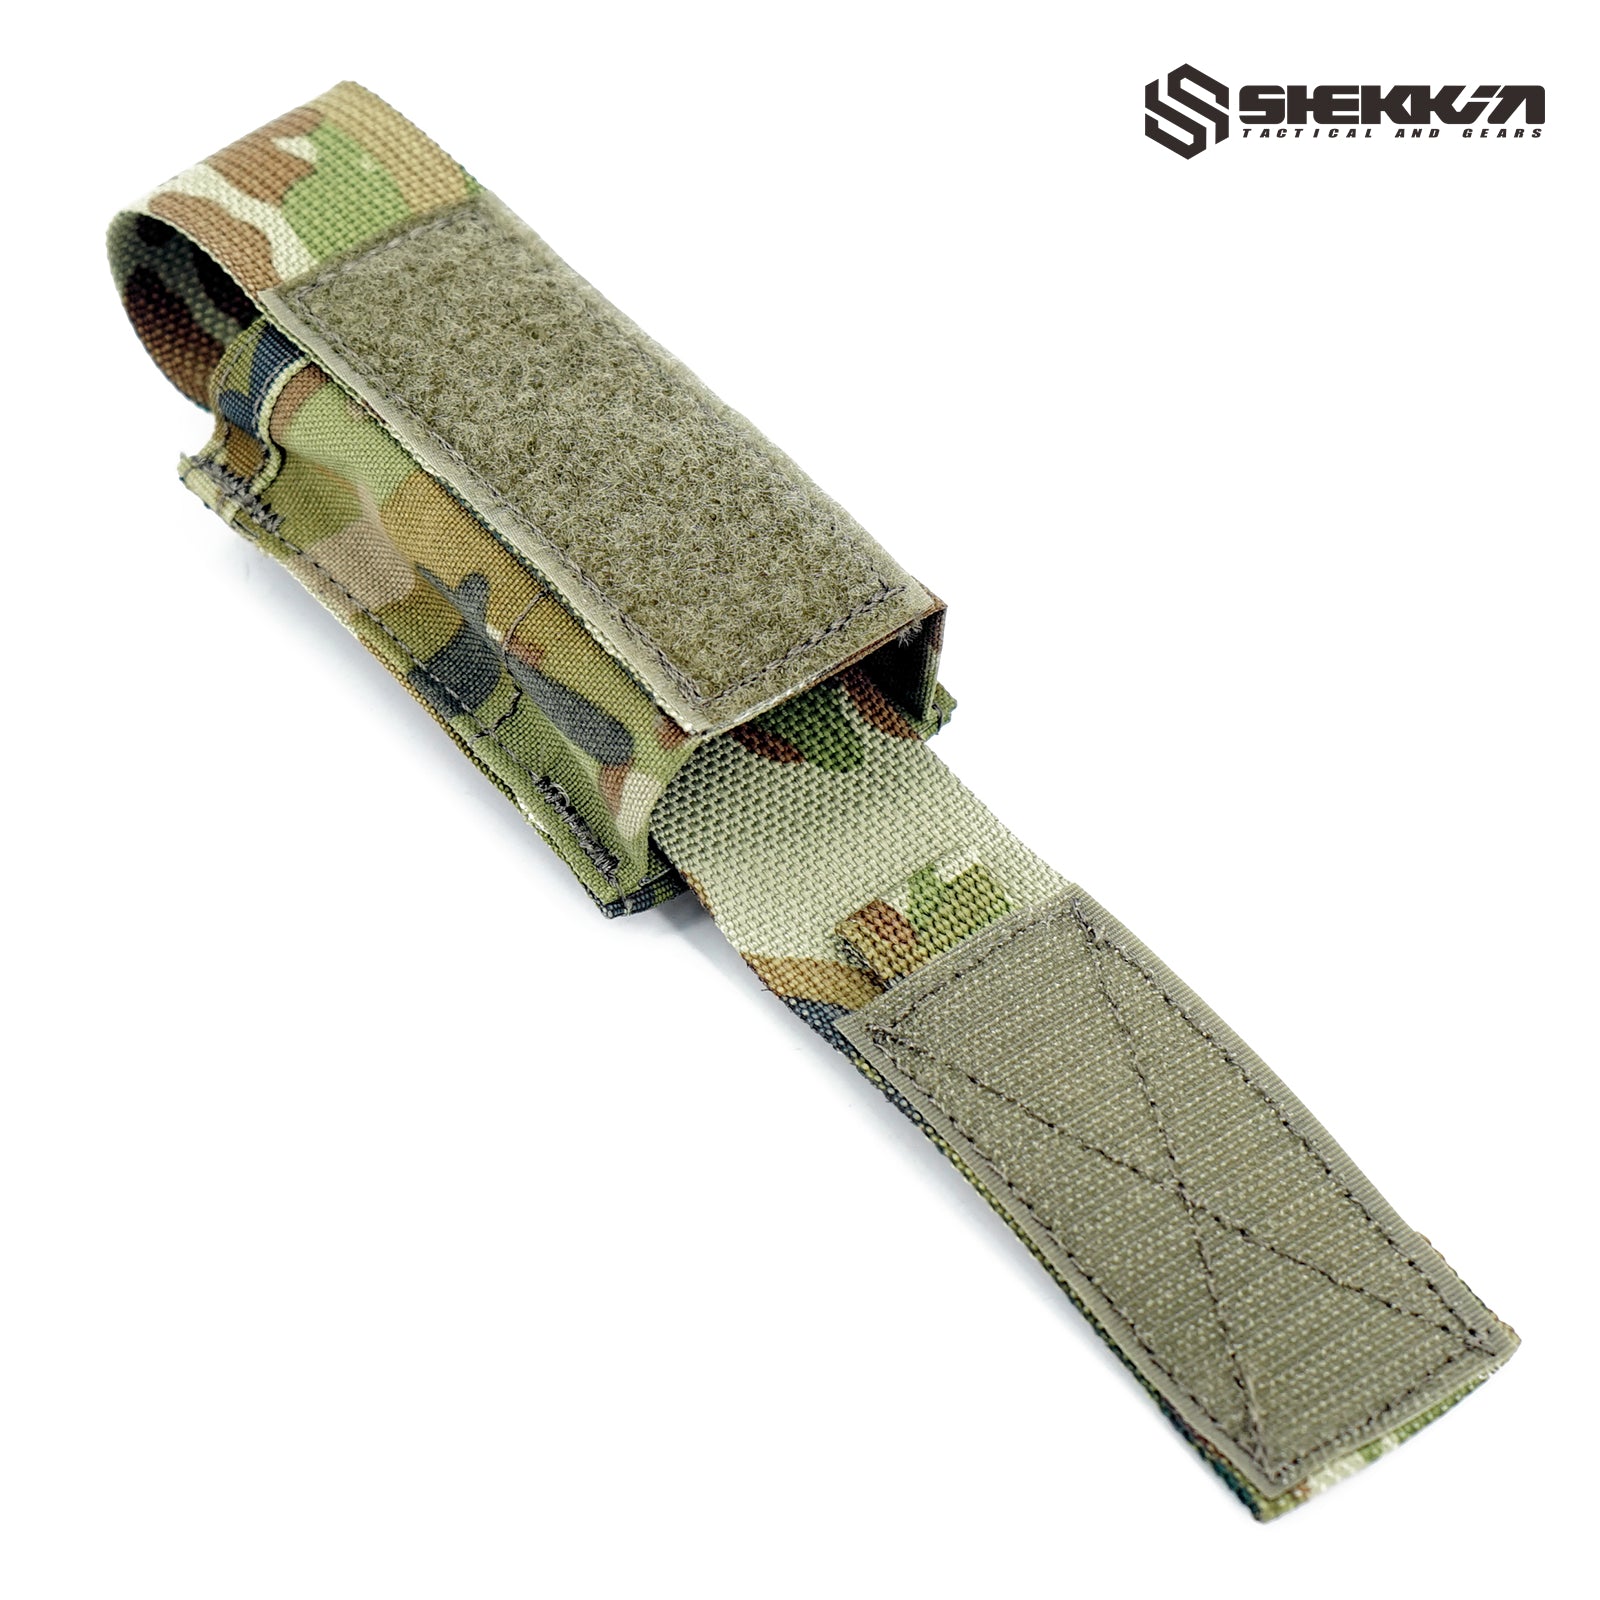 AMCU 40mm Distraction Grenade Single Pouch - Shekkin Gears